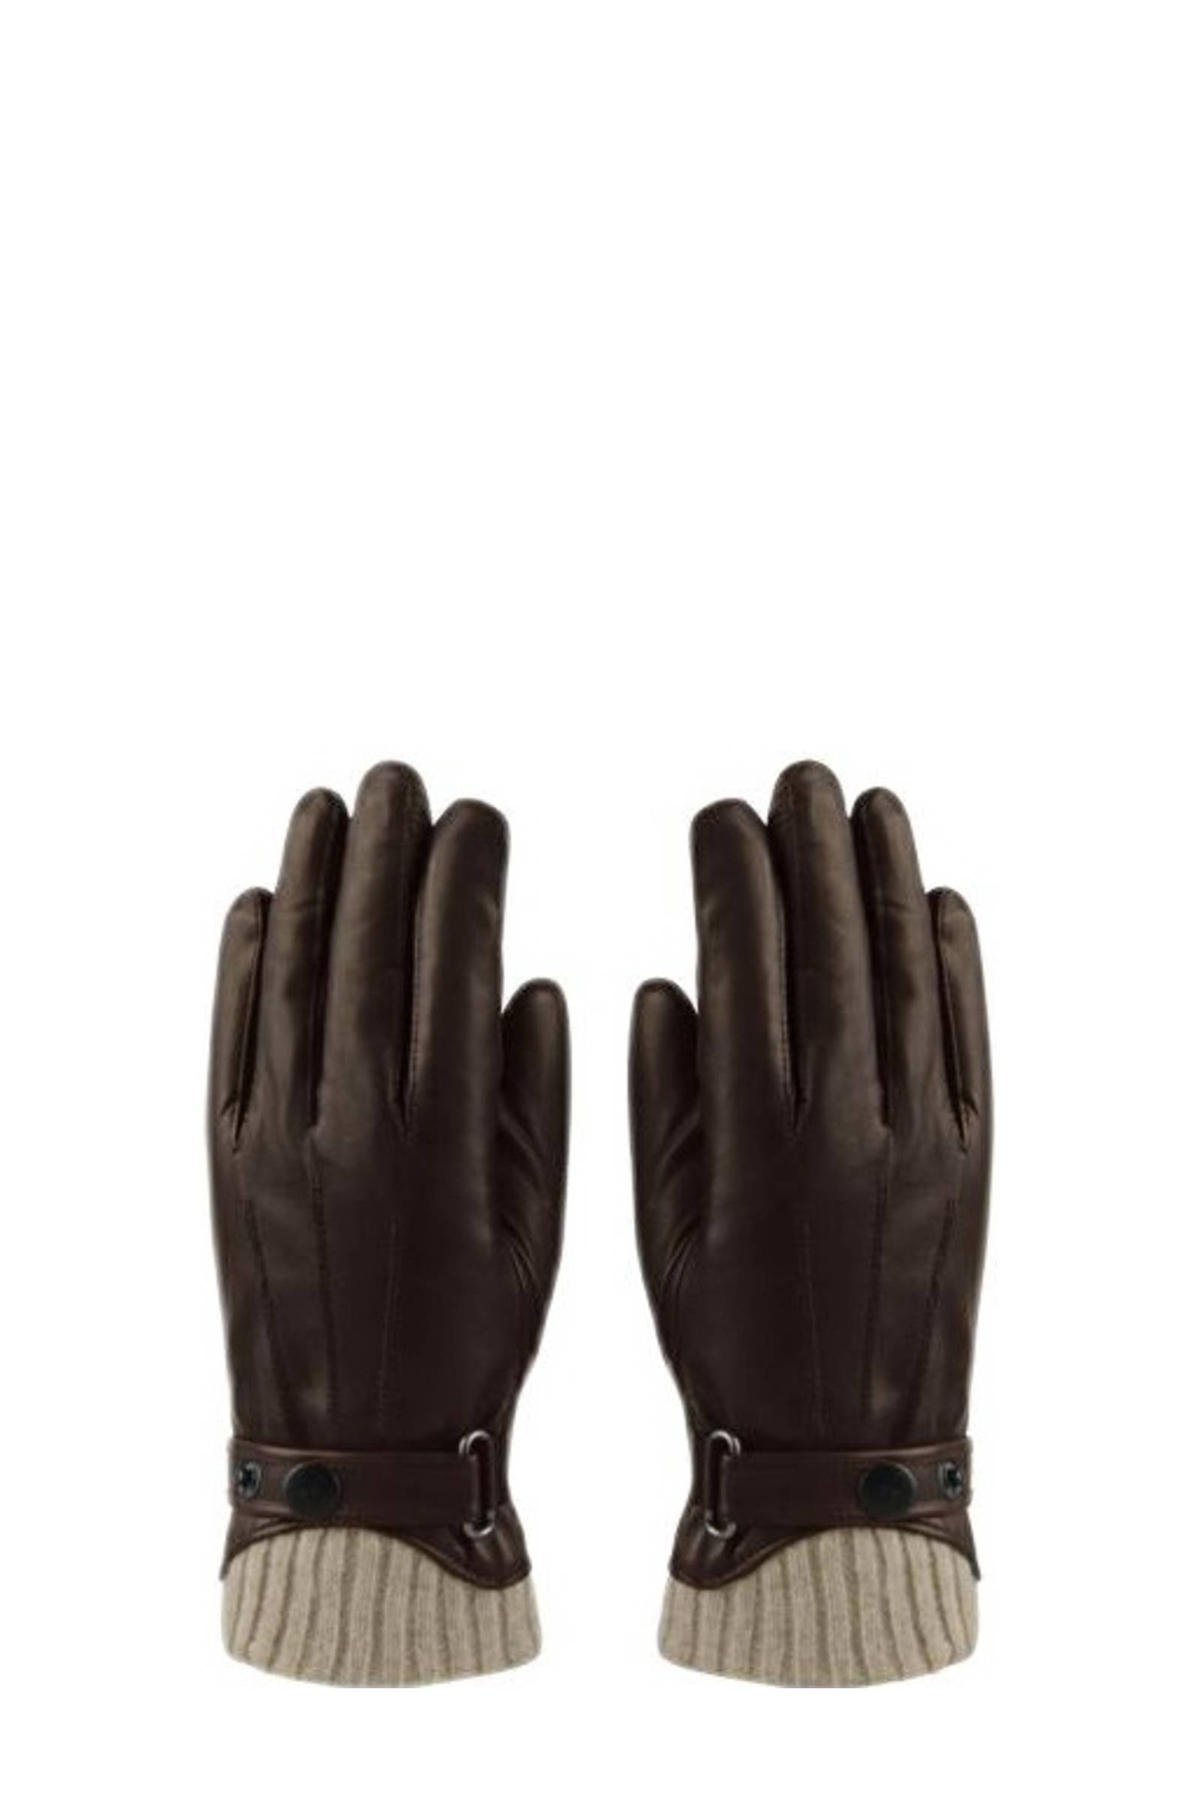 Verplaatsbaar Impressionisme prinses HATLAND leren handschoenen Tygo bruin | wehkamp